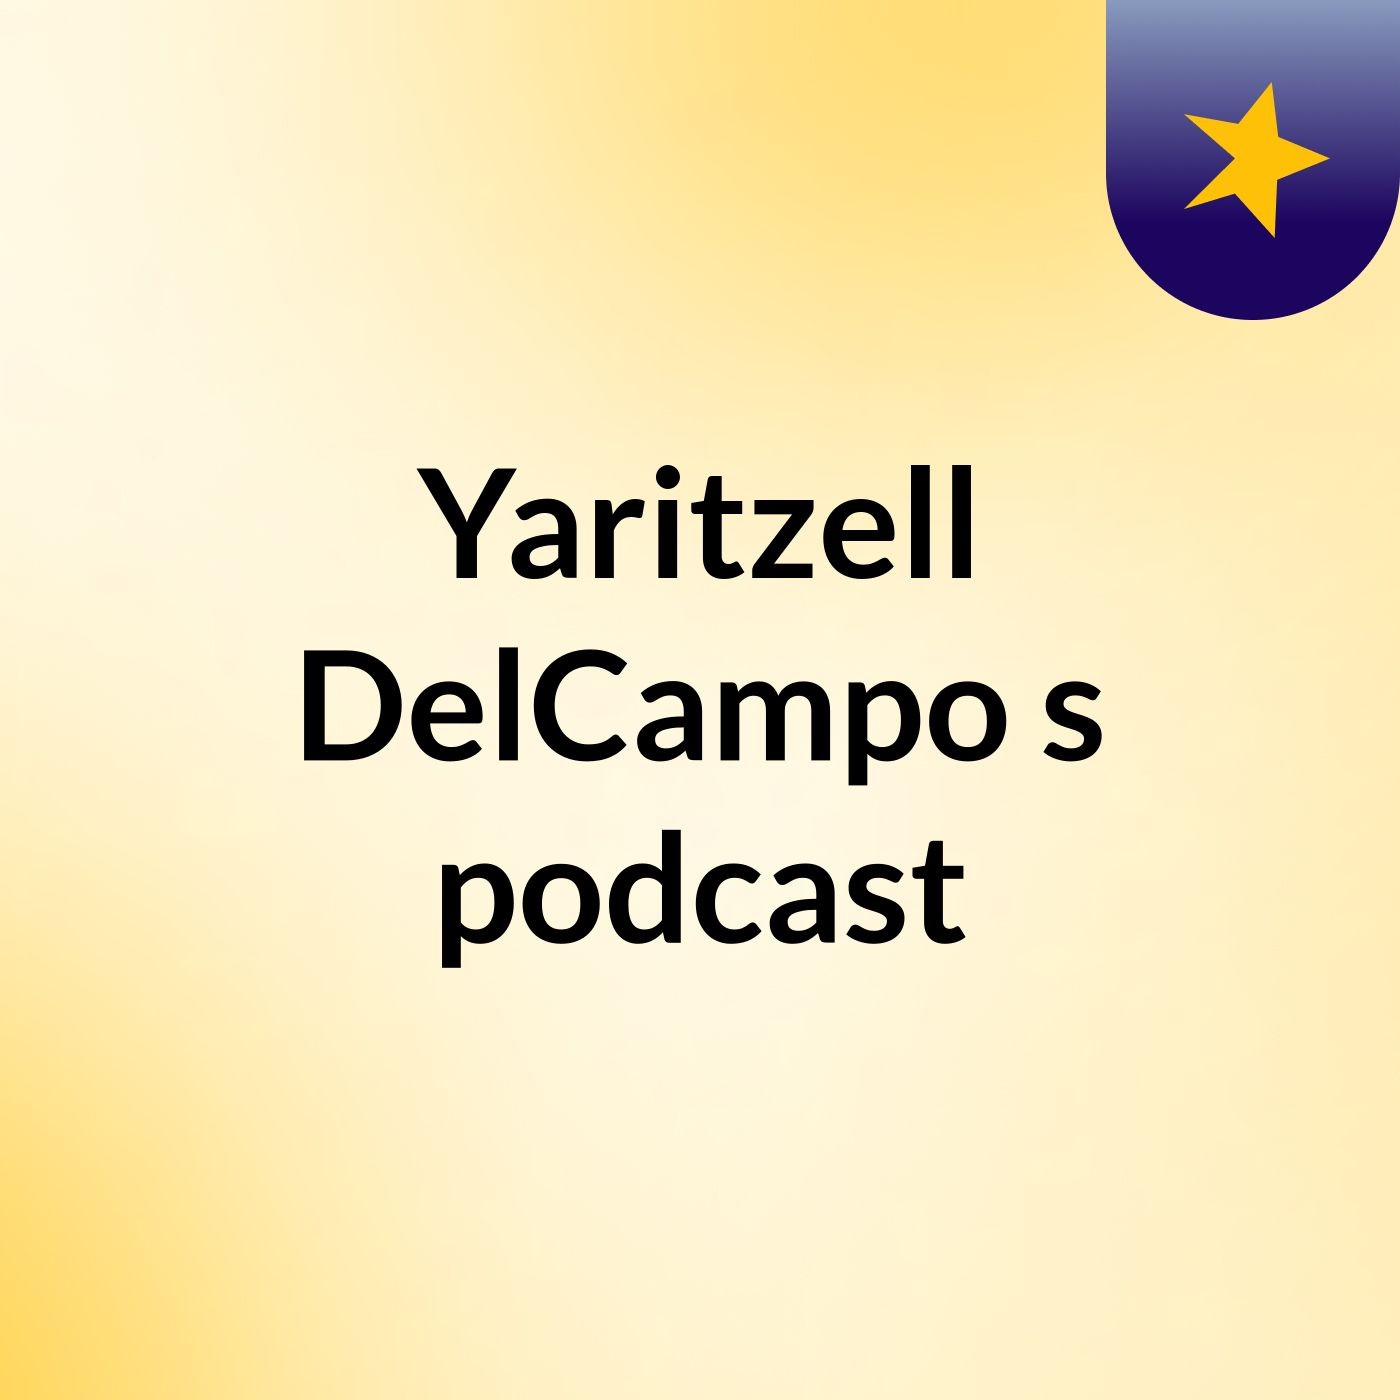 Yaritzell DelCampo's podcast